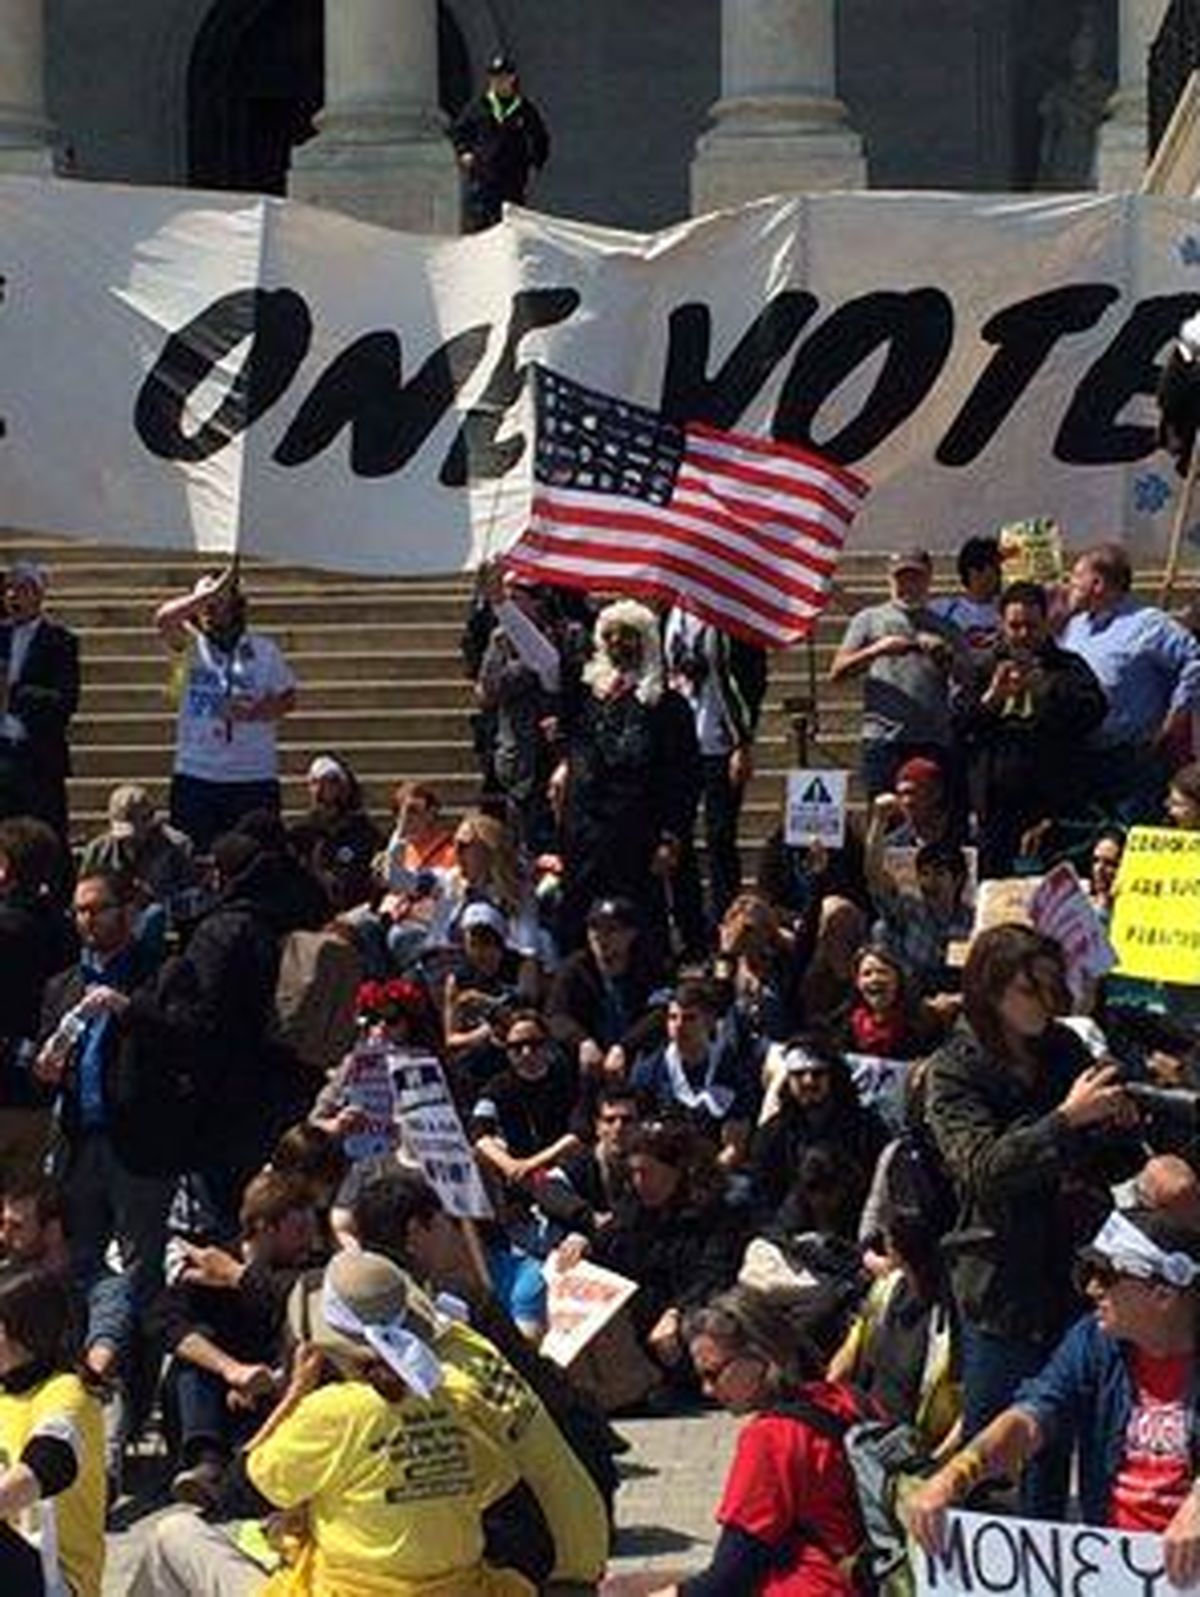 دستگیری ۴۰۰ معترض آمریکایی در تظاهرات مقابل کنگره +فیلم